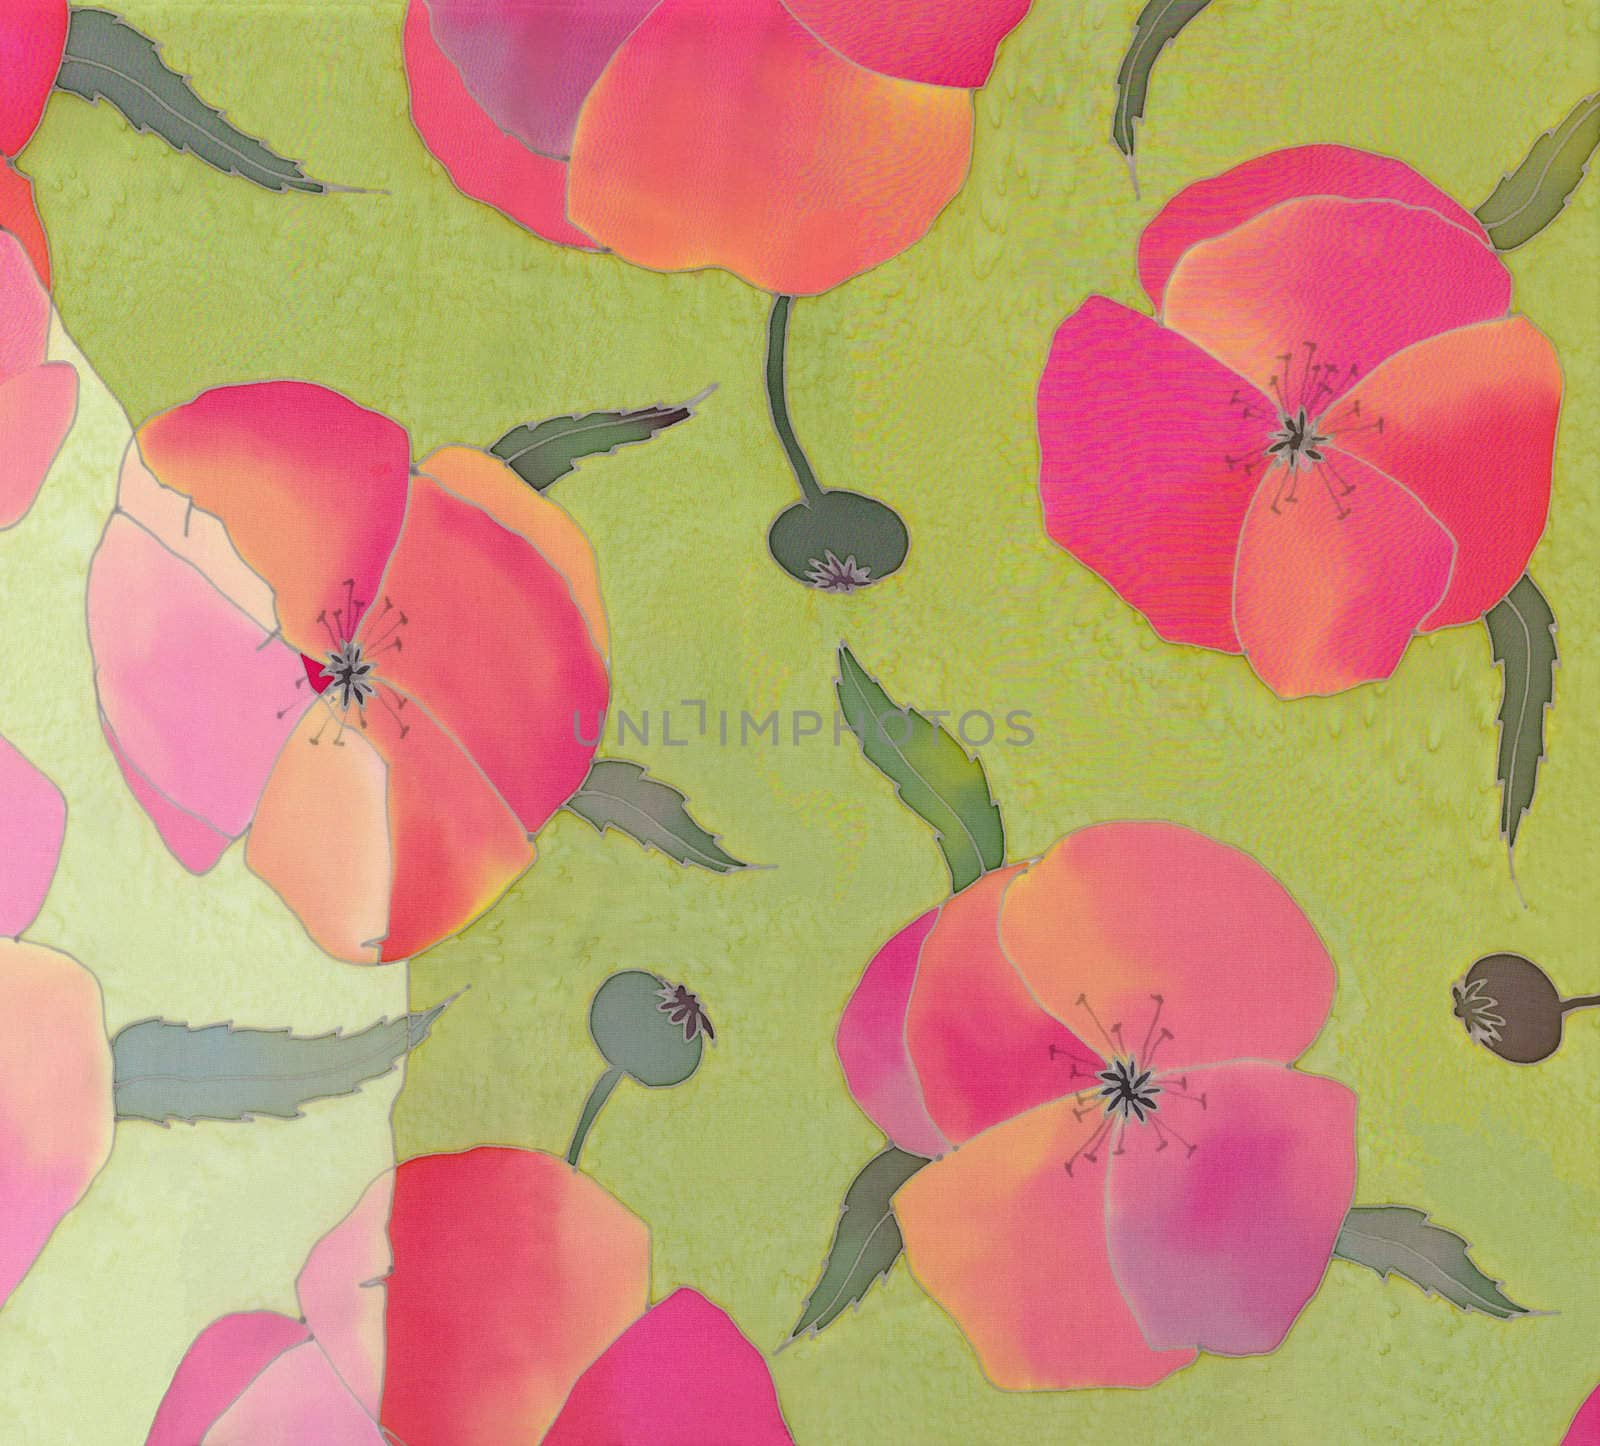 poppies background by vergasova